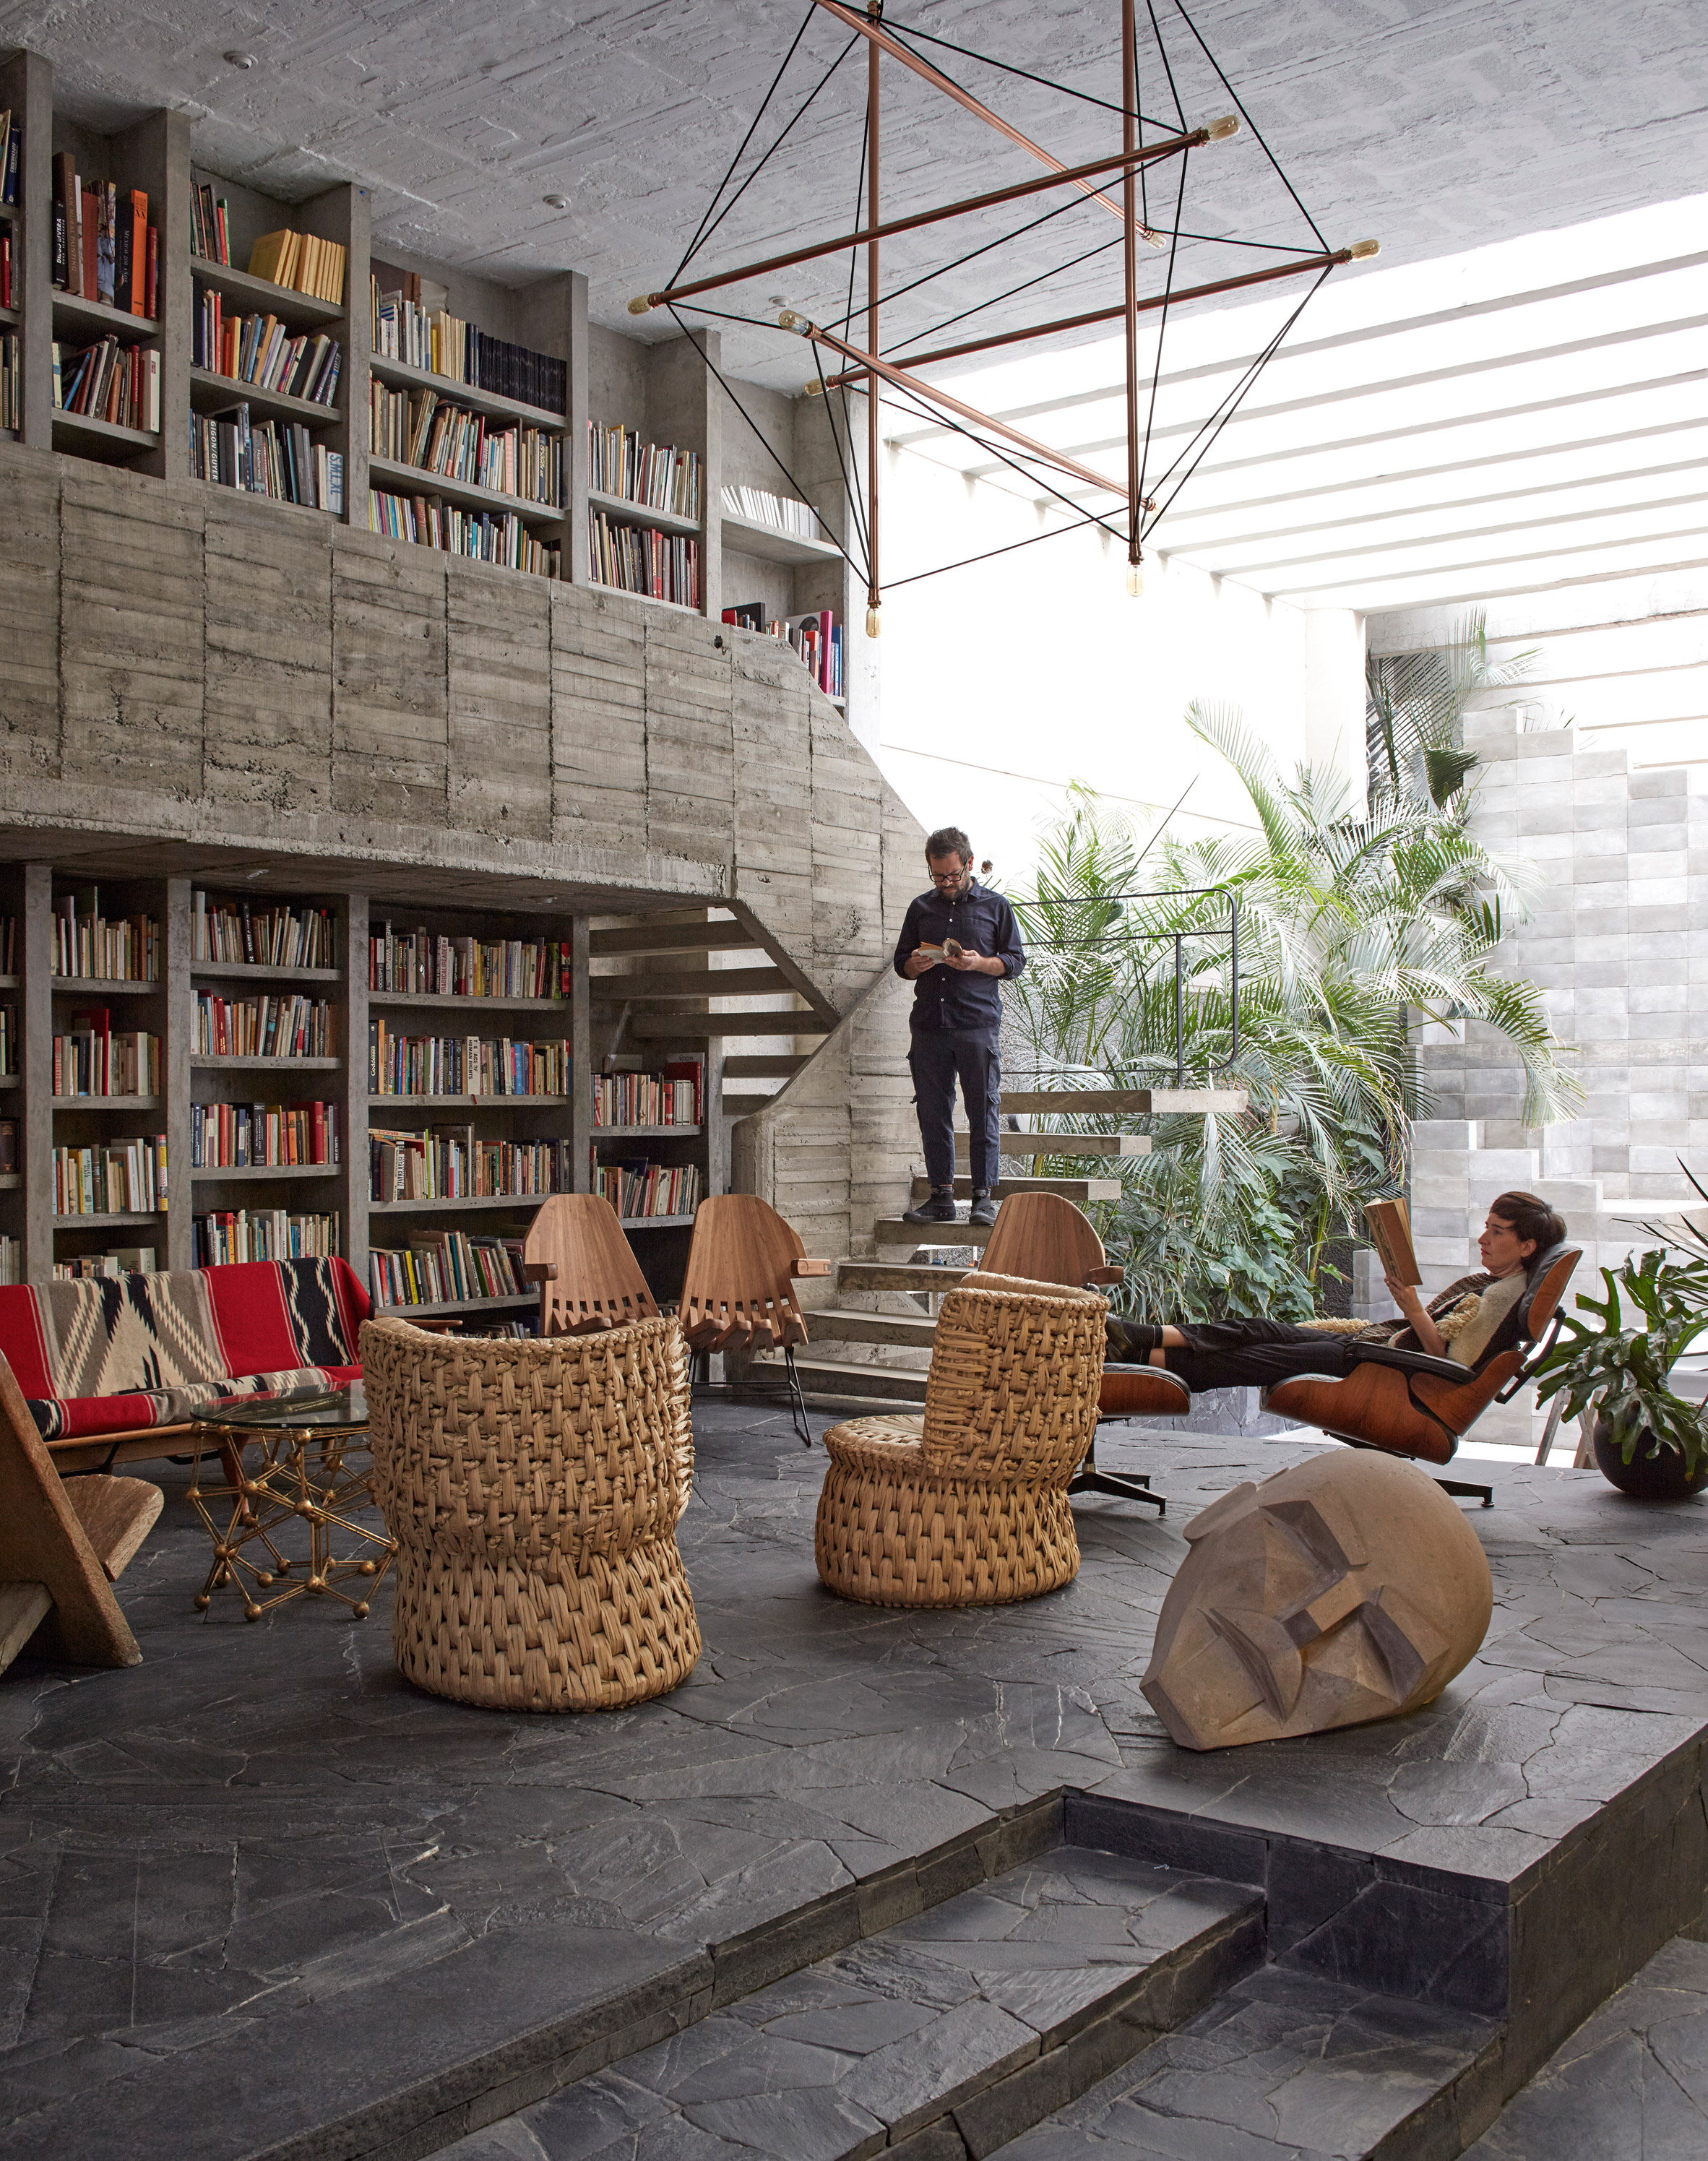 Sala modernista com biblioteca do escultor mexicano Pedro Reyes